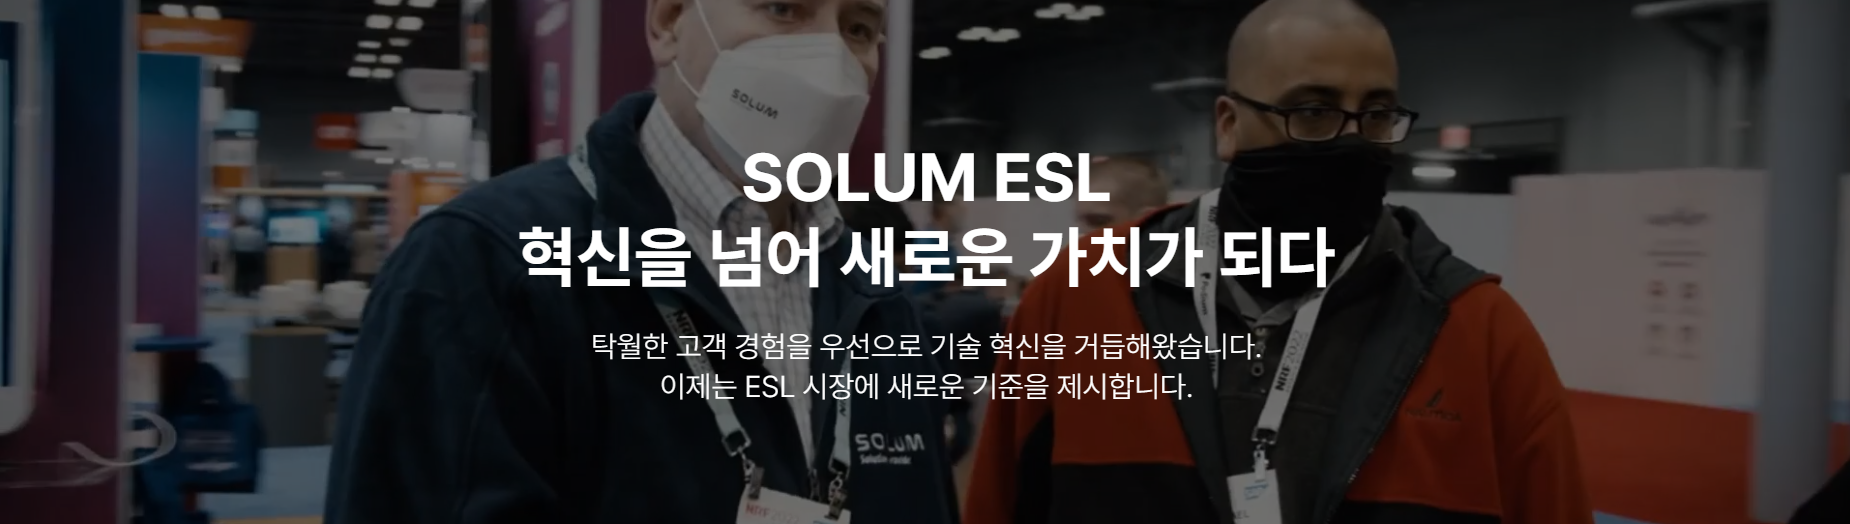 솔루엠 ESL 마케팅디자인 신입 또는 경력 채용